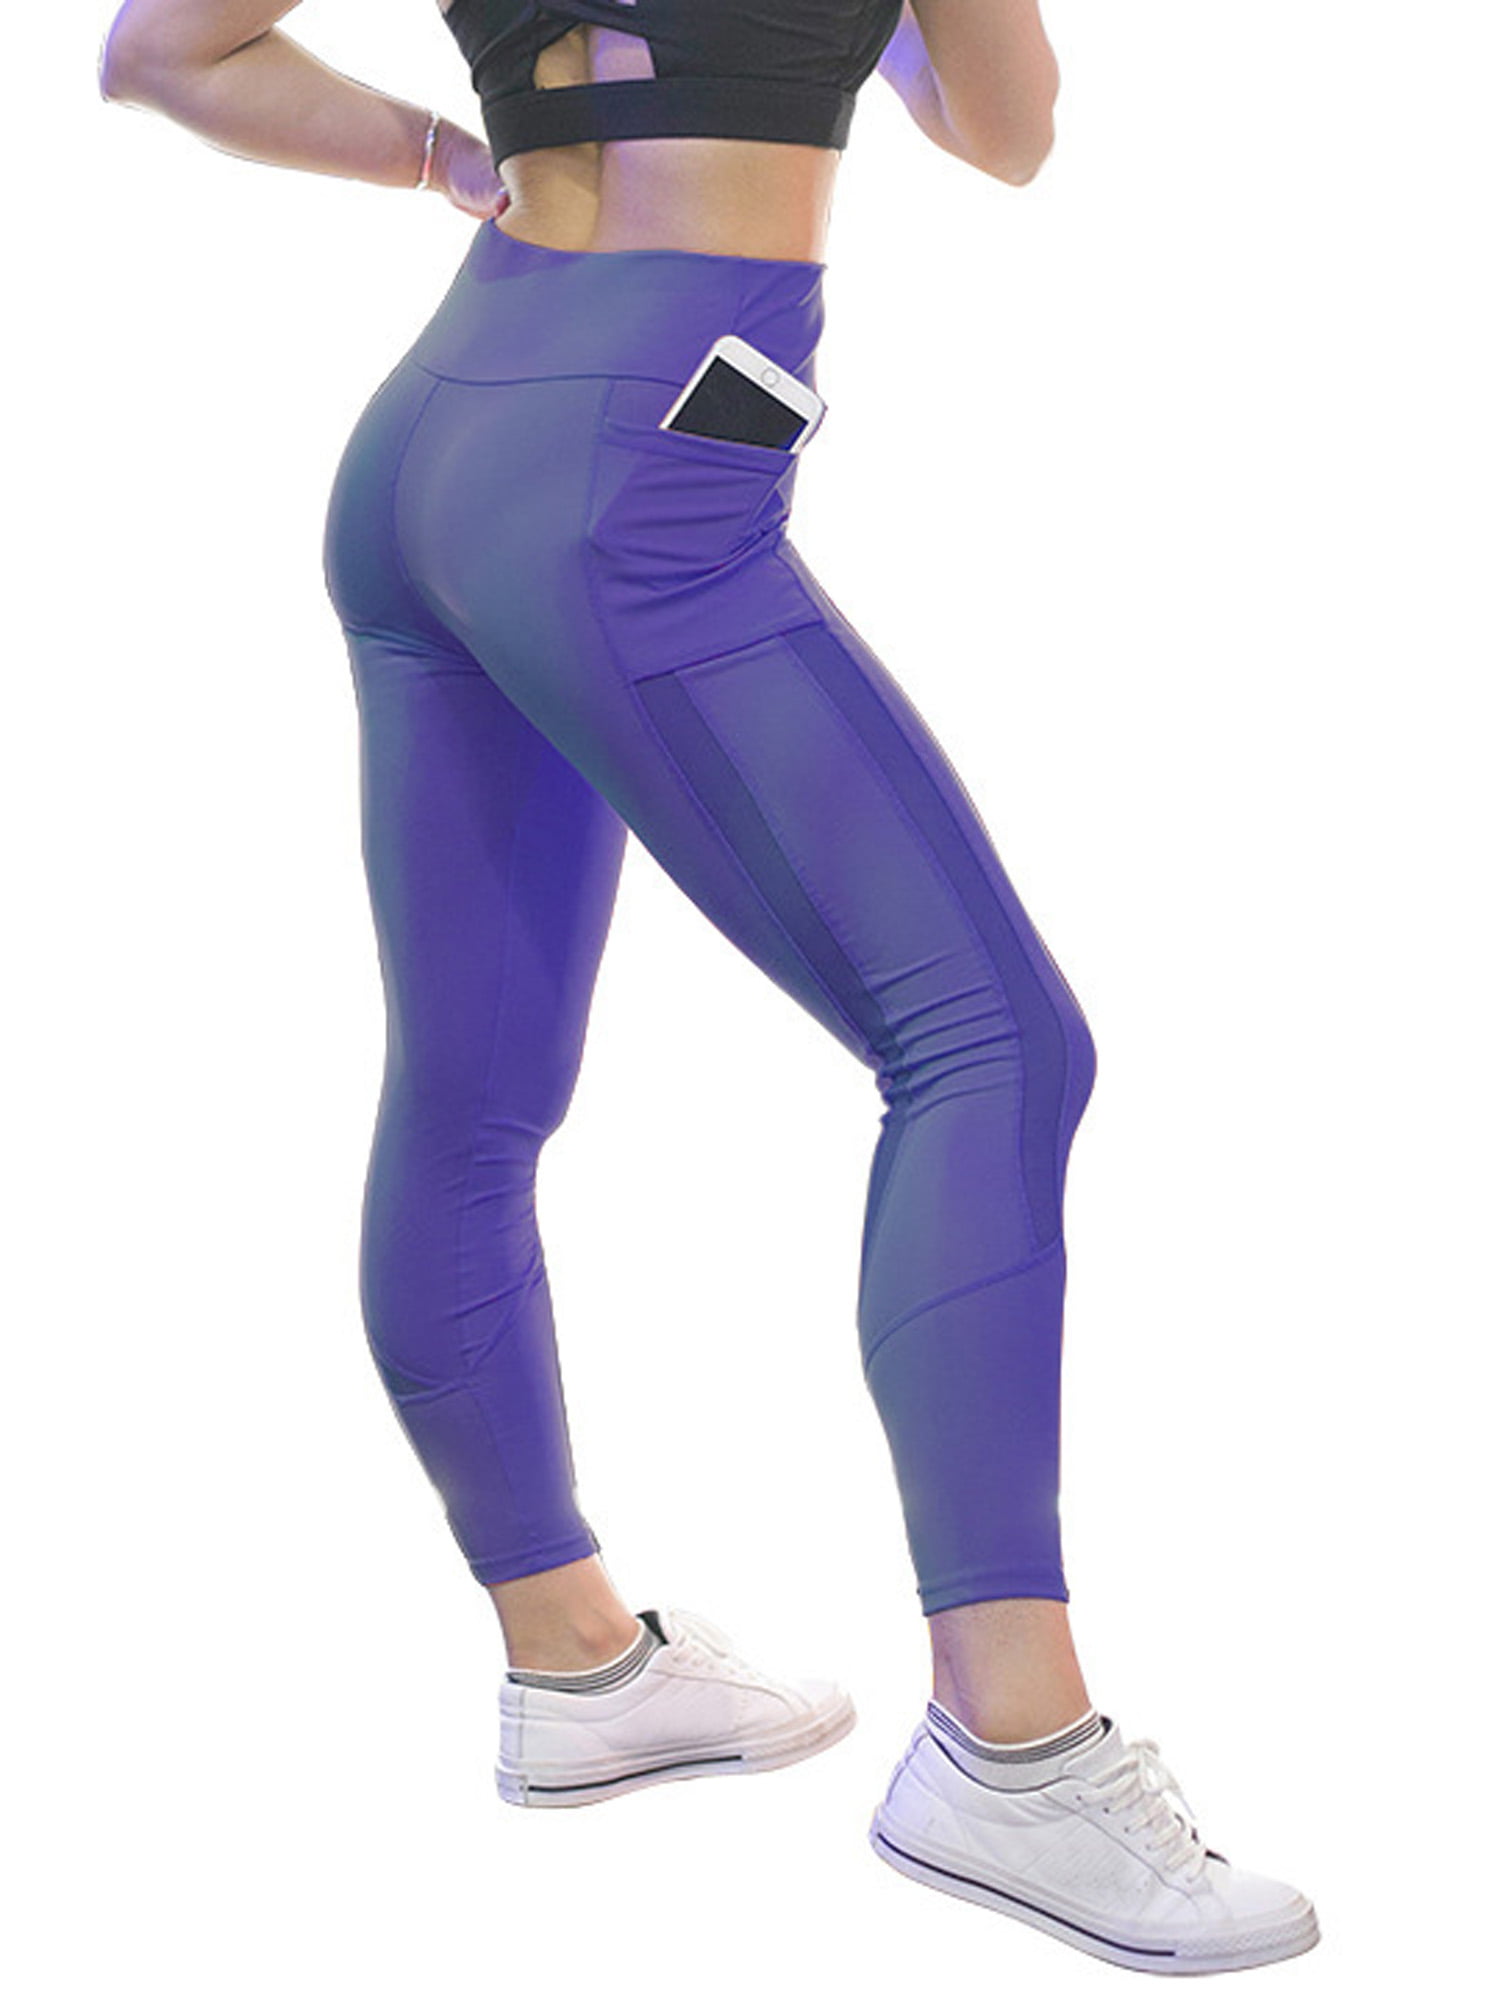 women's sports leggings